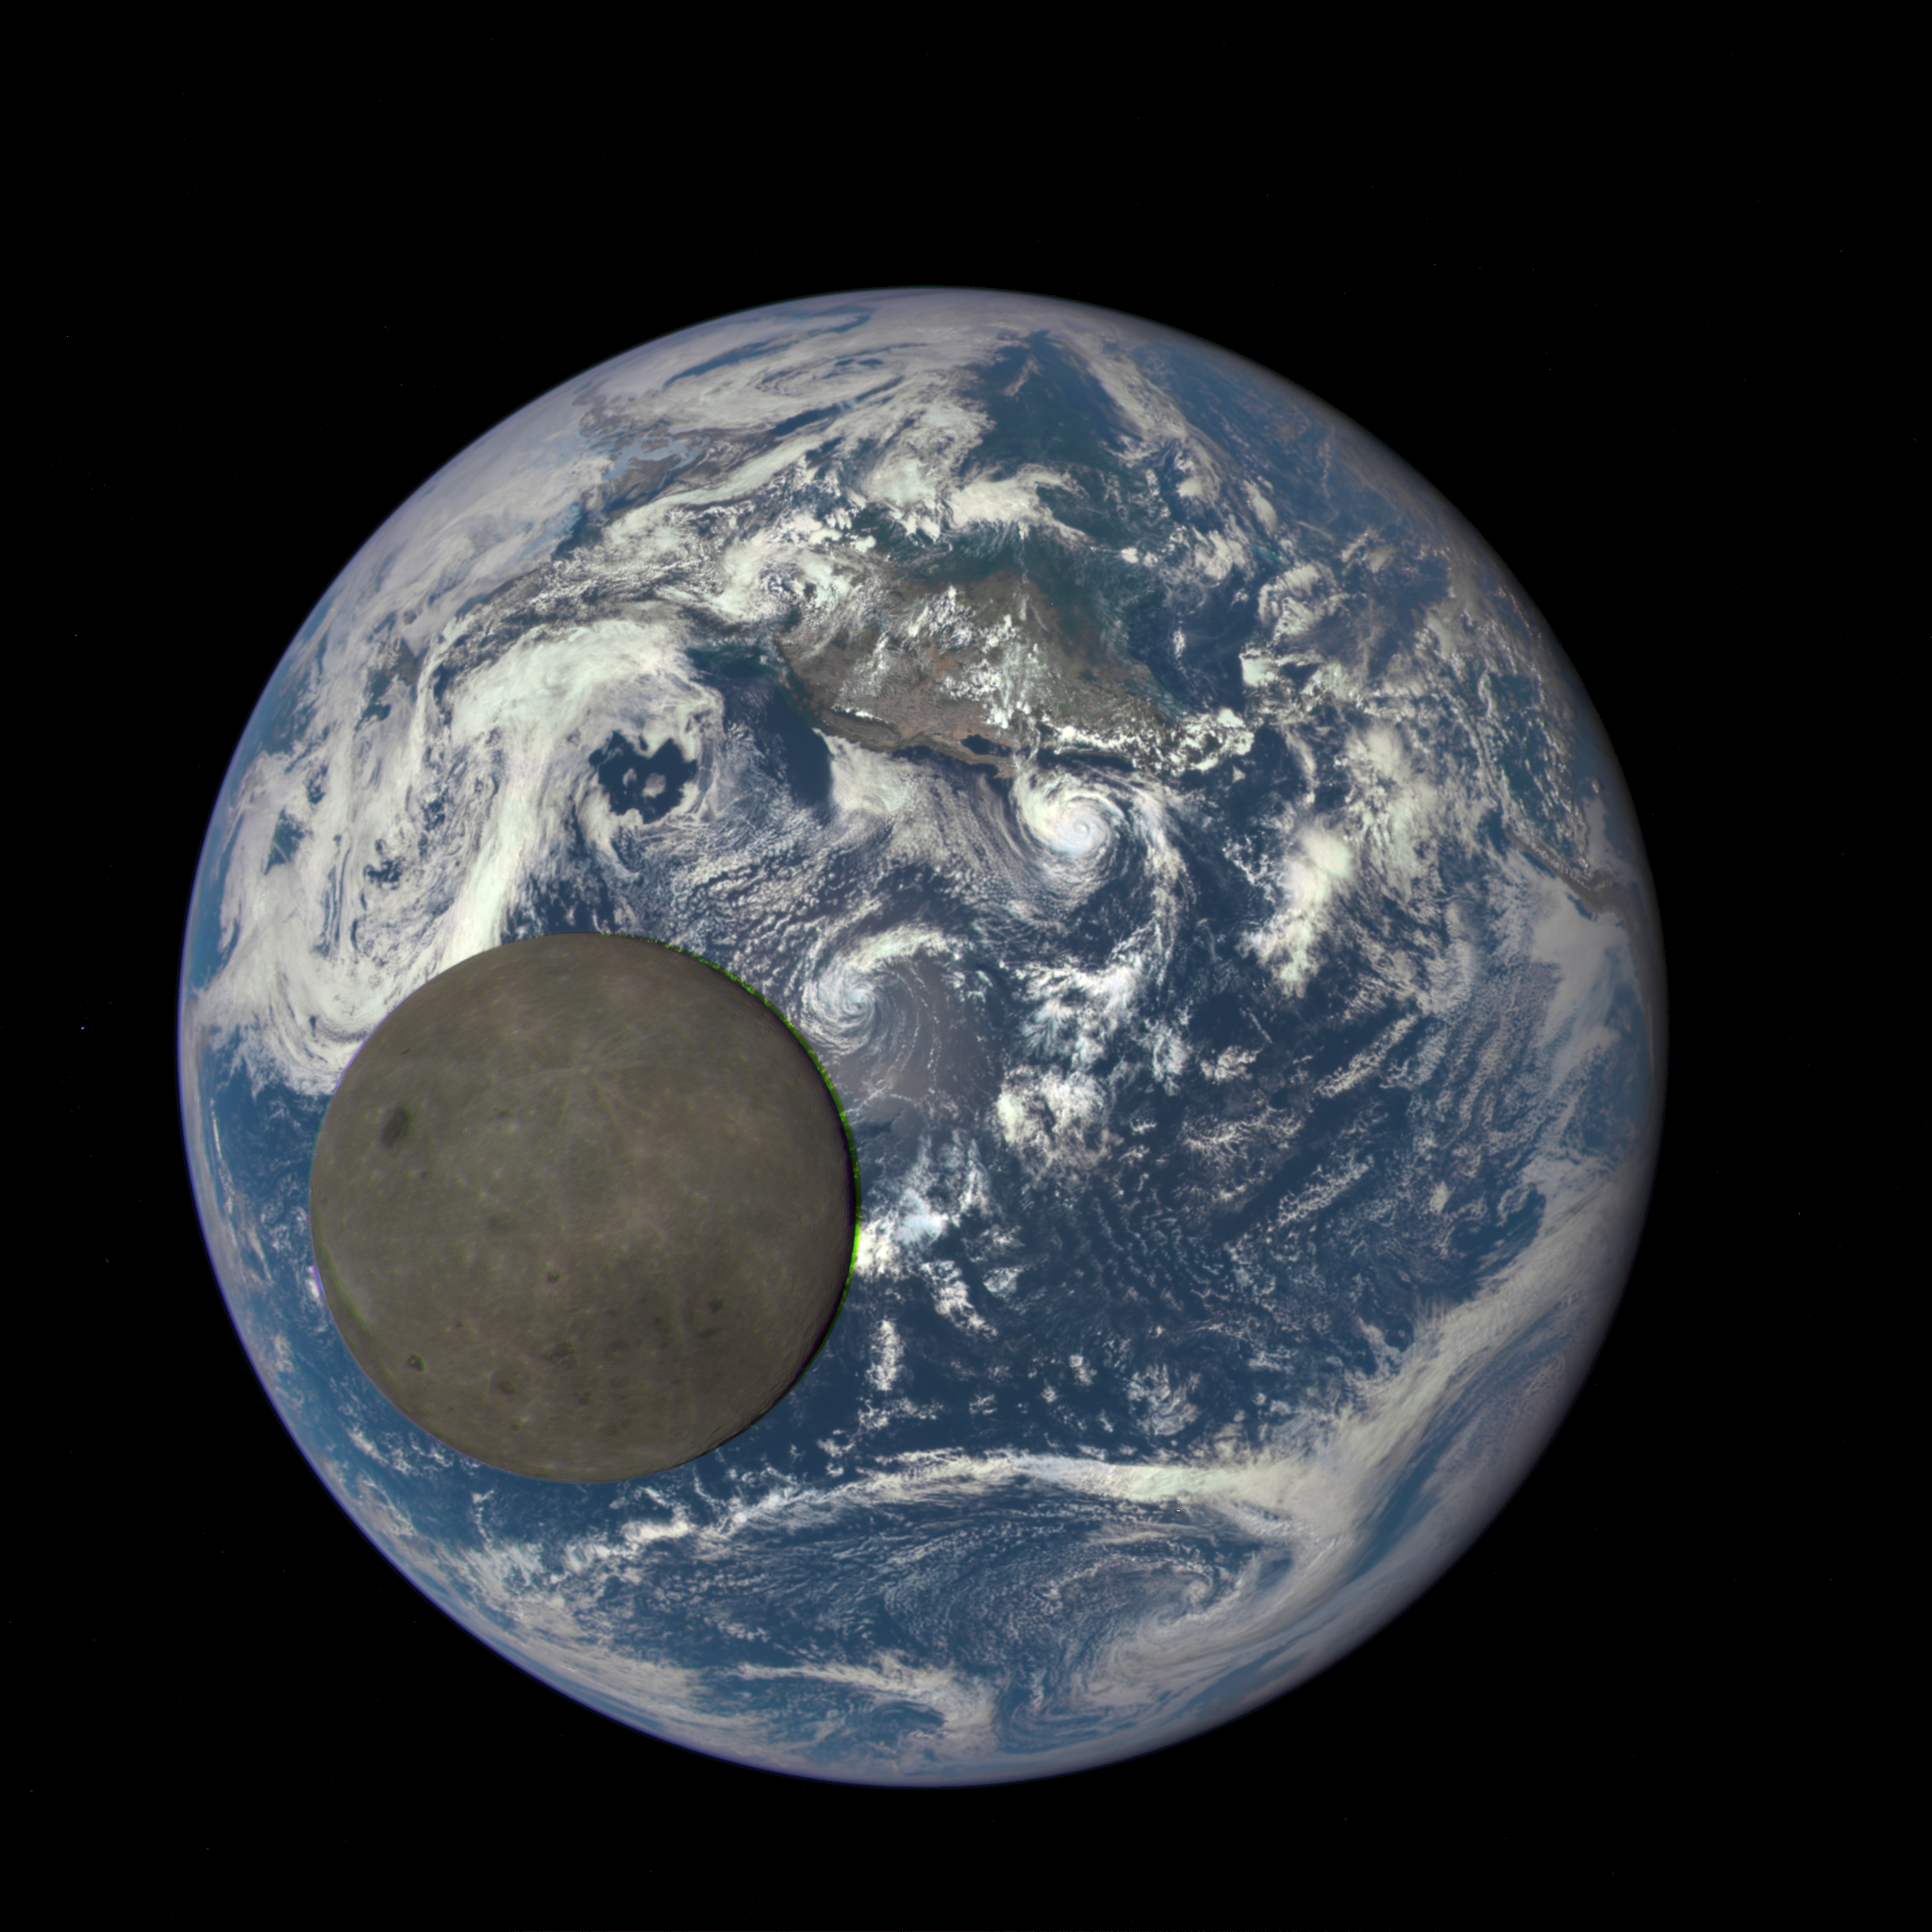 НАСА обнародовало анимационное изображение обратной стороны Луны